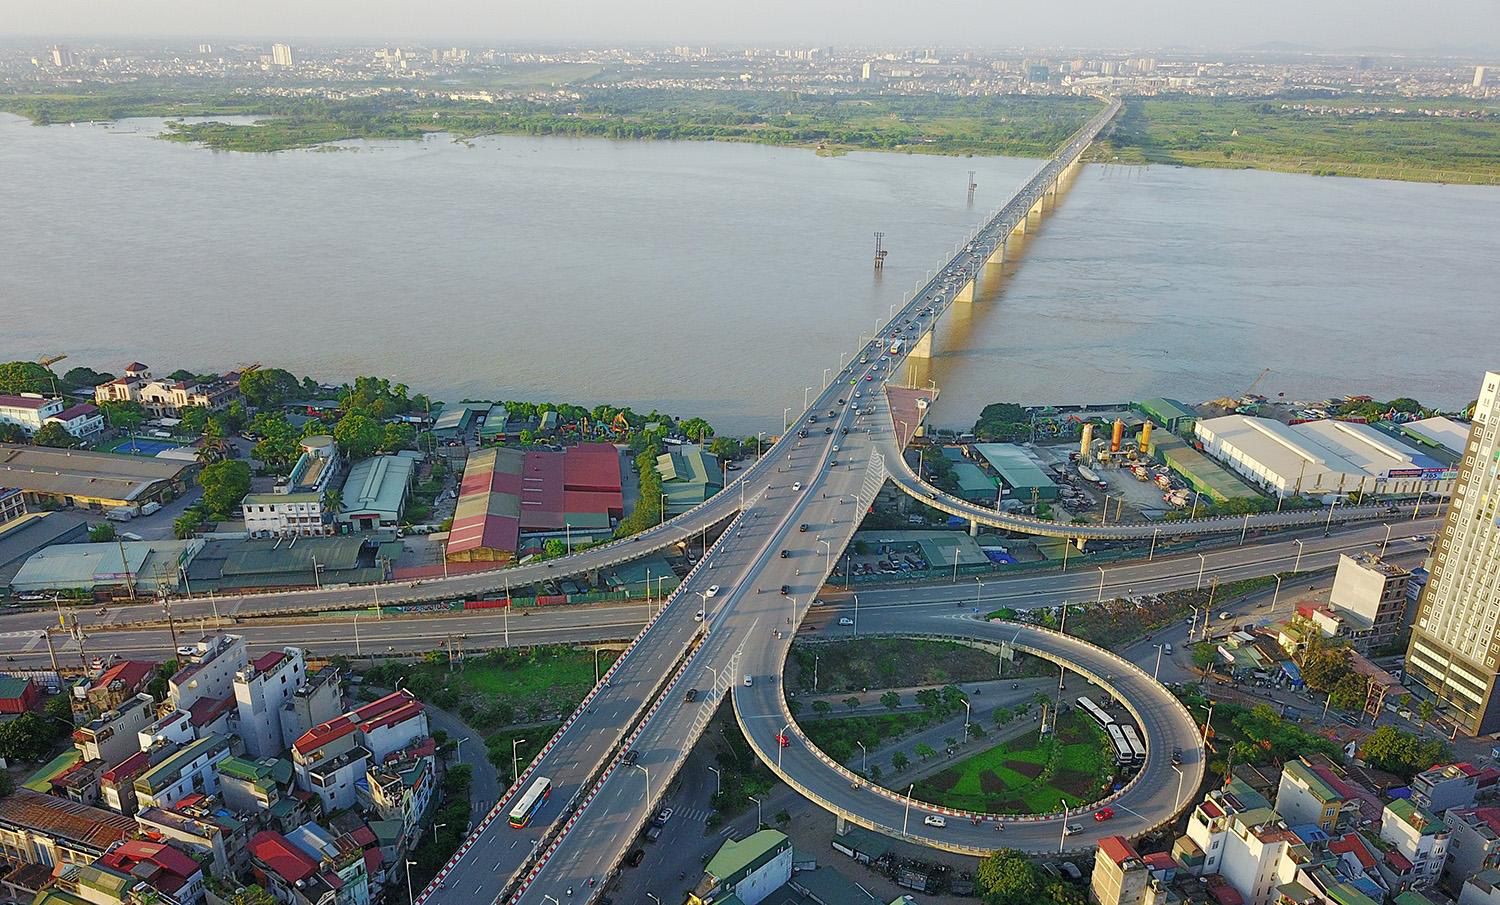 Hình ảnh cầu Vĩnh Tuy bắc qua sông Hồng nhìn từ trên cao